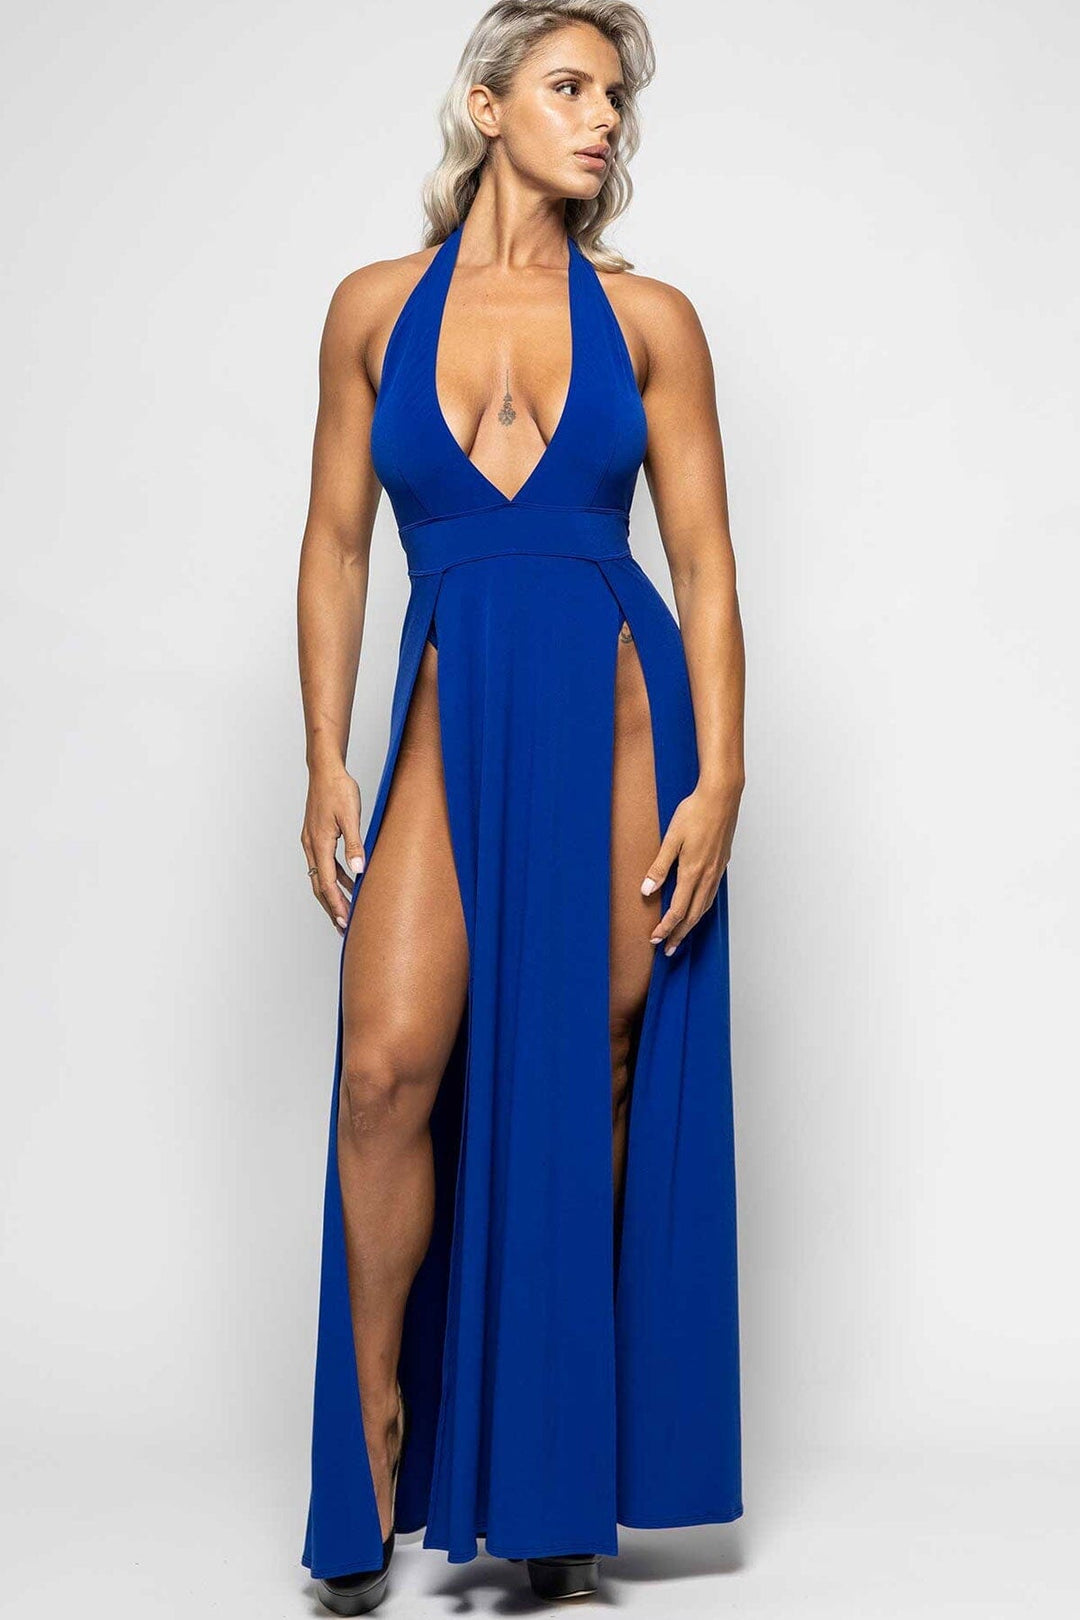 Isabella Blue Lycra Dress-Edgy Dresses-Les P'tites Folies-Blue-XS-SEXYSHOES.COM